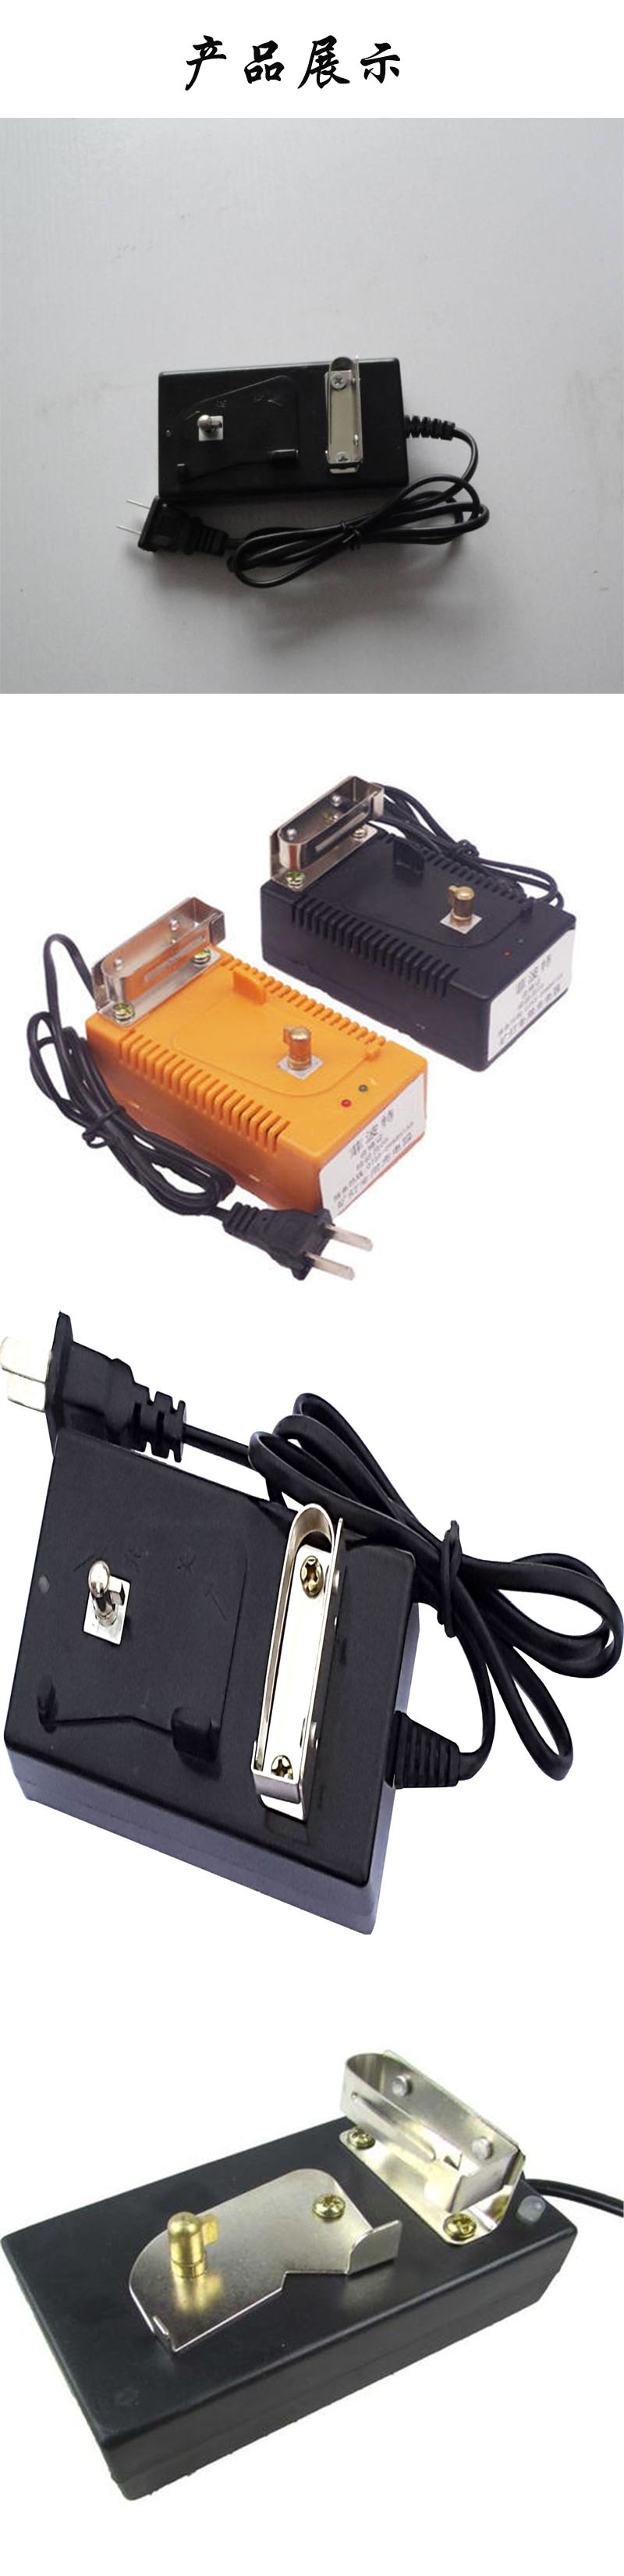 煤矿井下用矿灯充电器 ctj-01zw型智能矿灯充电器示例图4